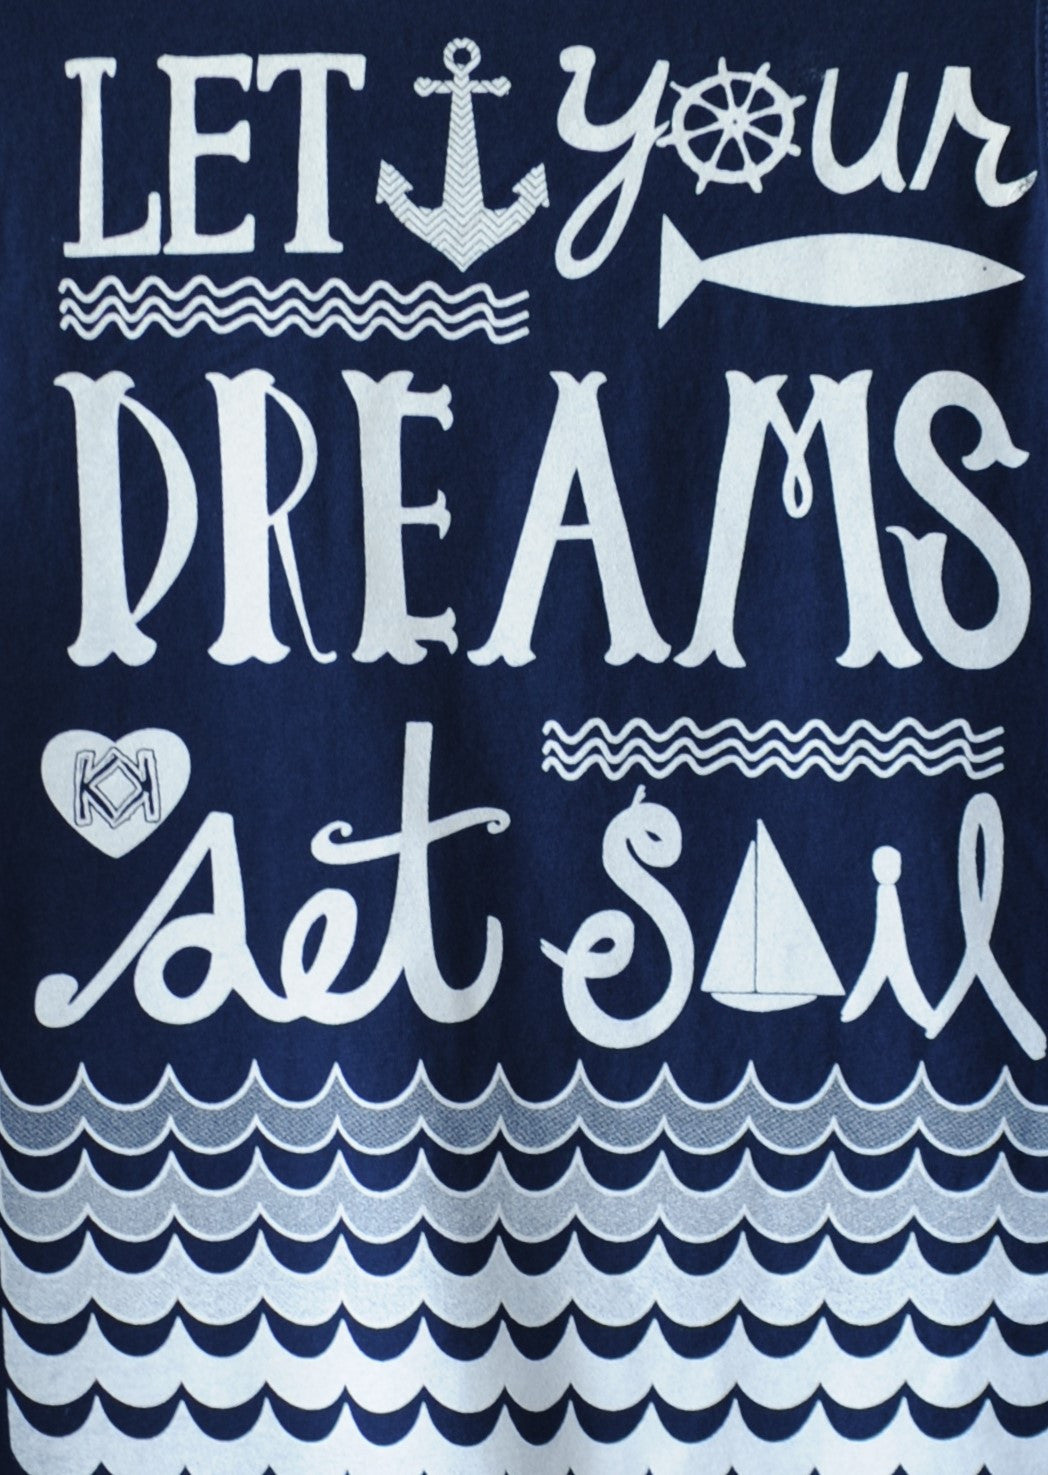 Dreams Set Sail LS w/ Pocket